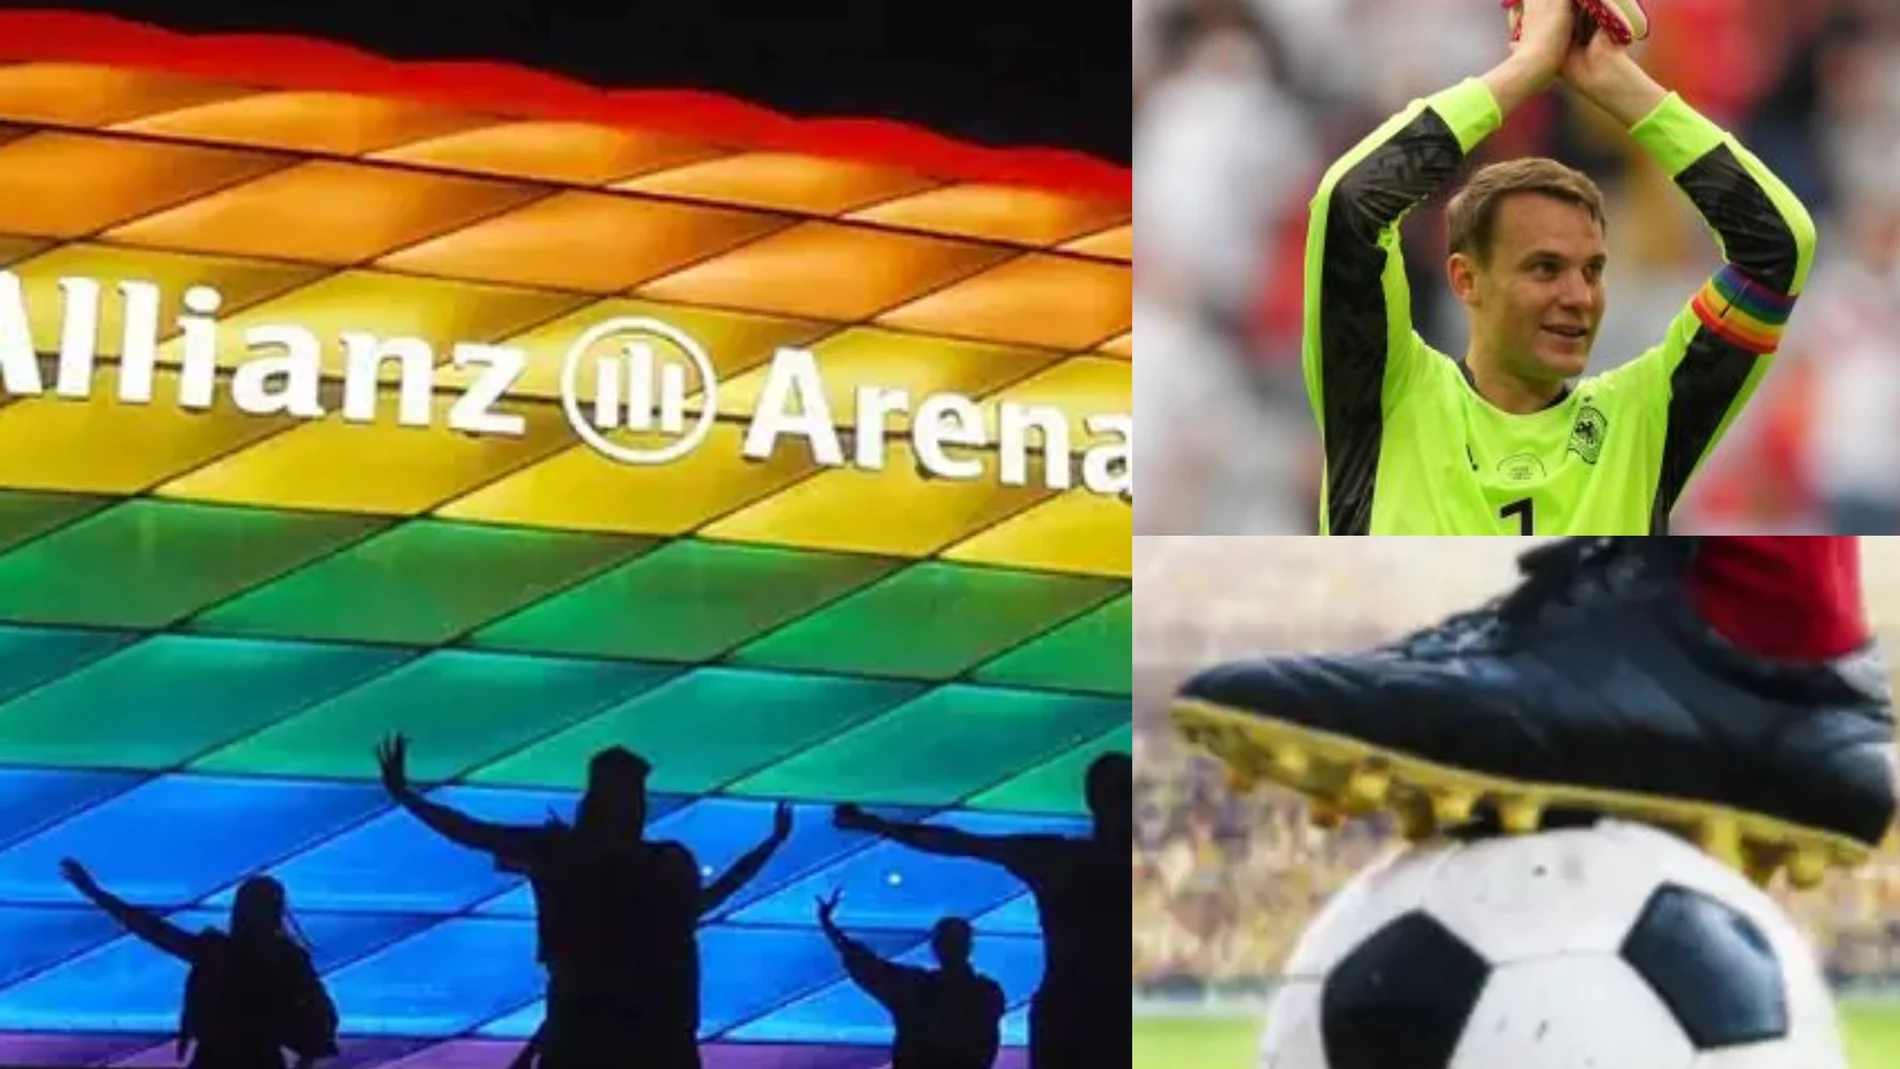 La bandera arcoiris sigue siendo invisible para el fútbol español